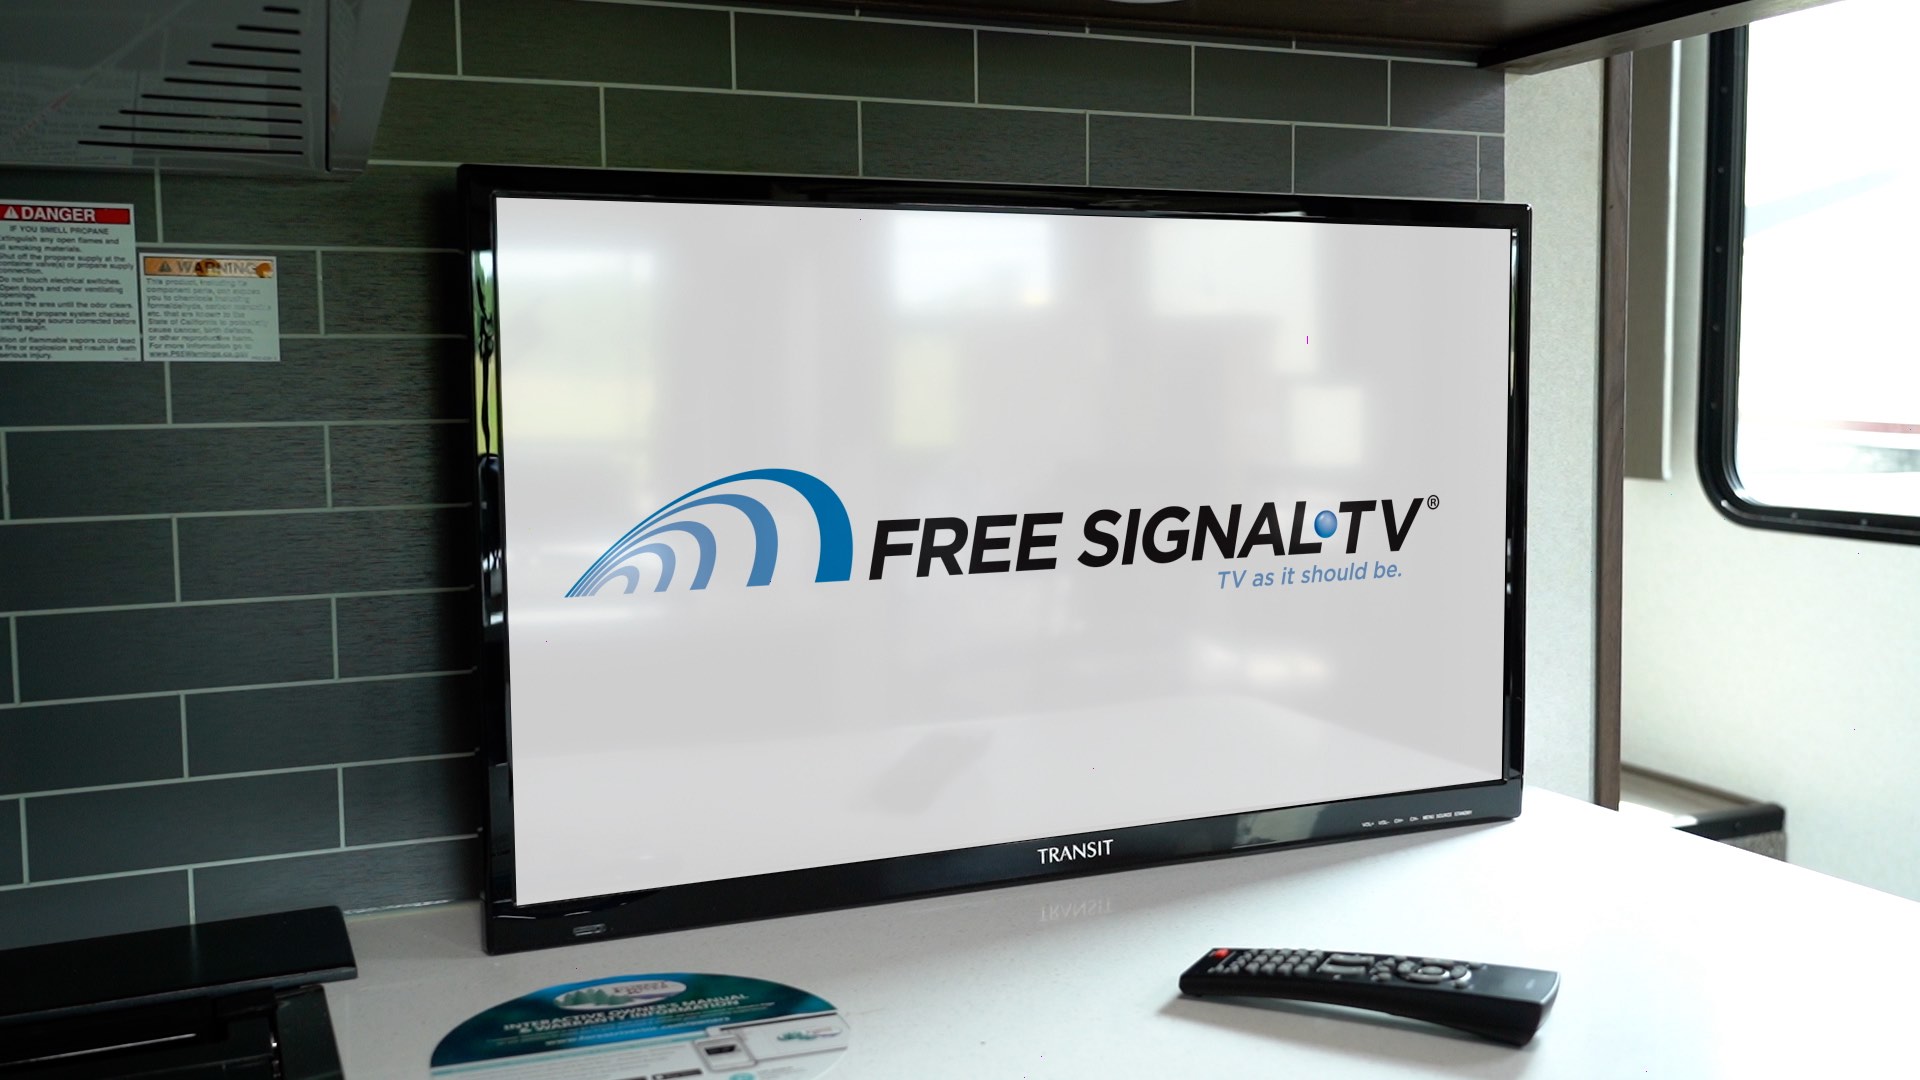 Free Signal TV: Transit